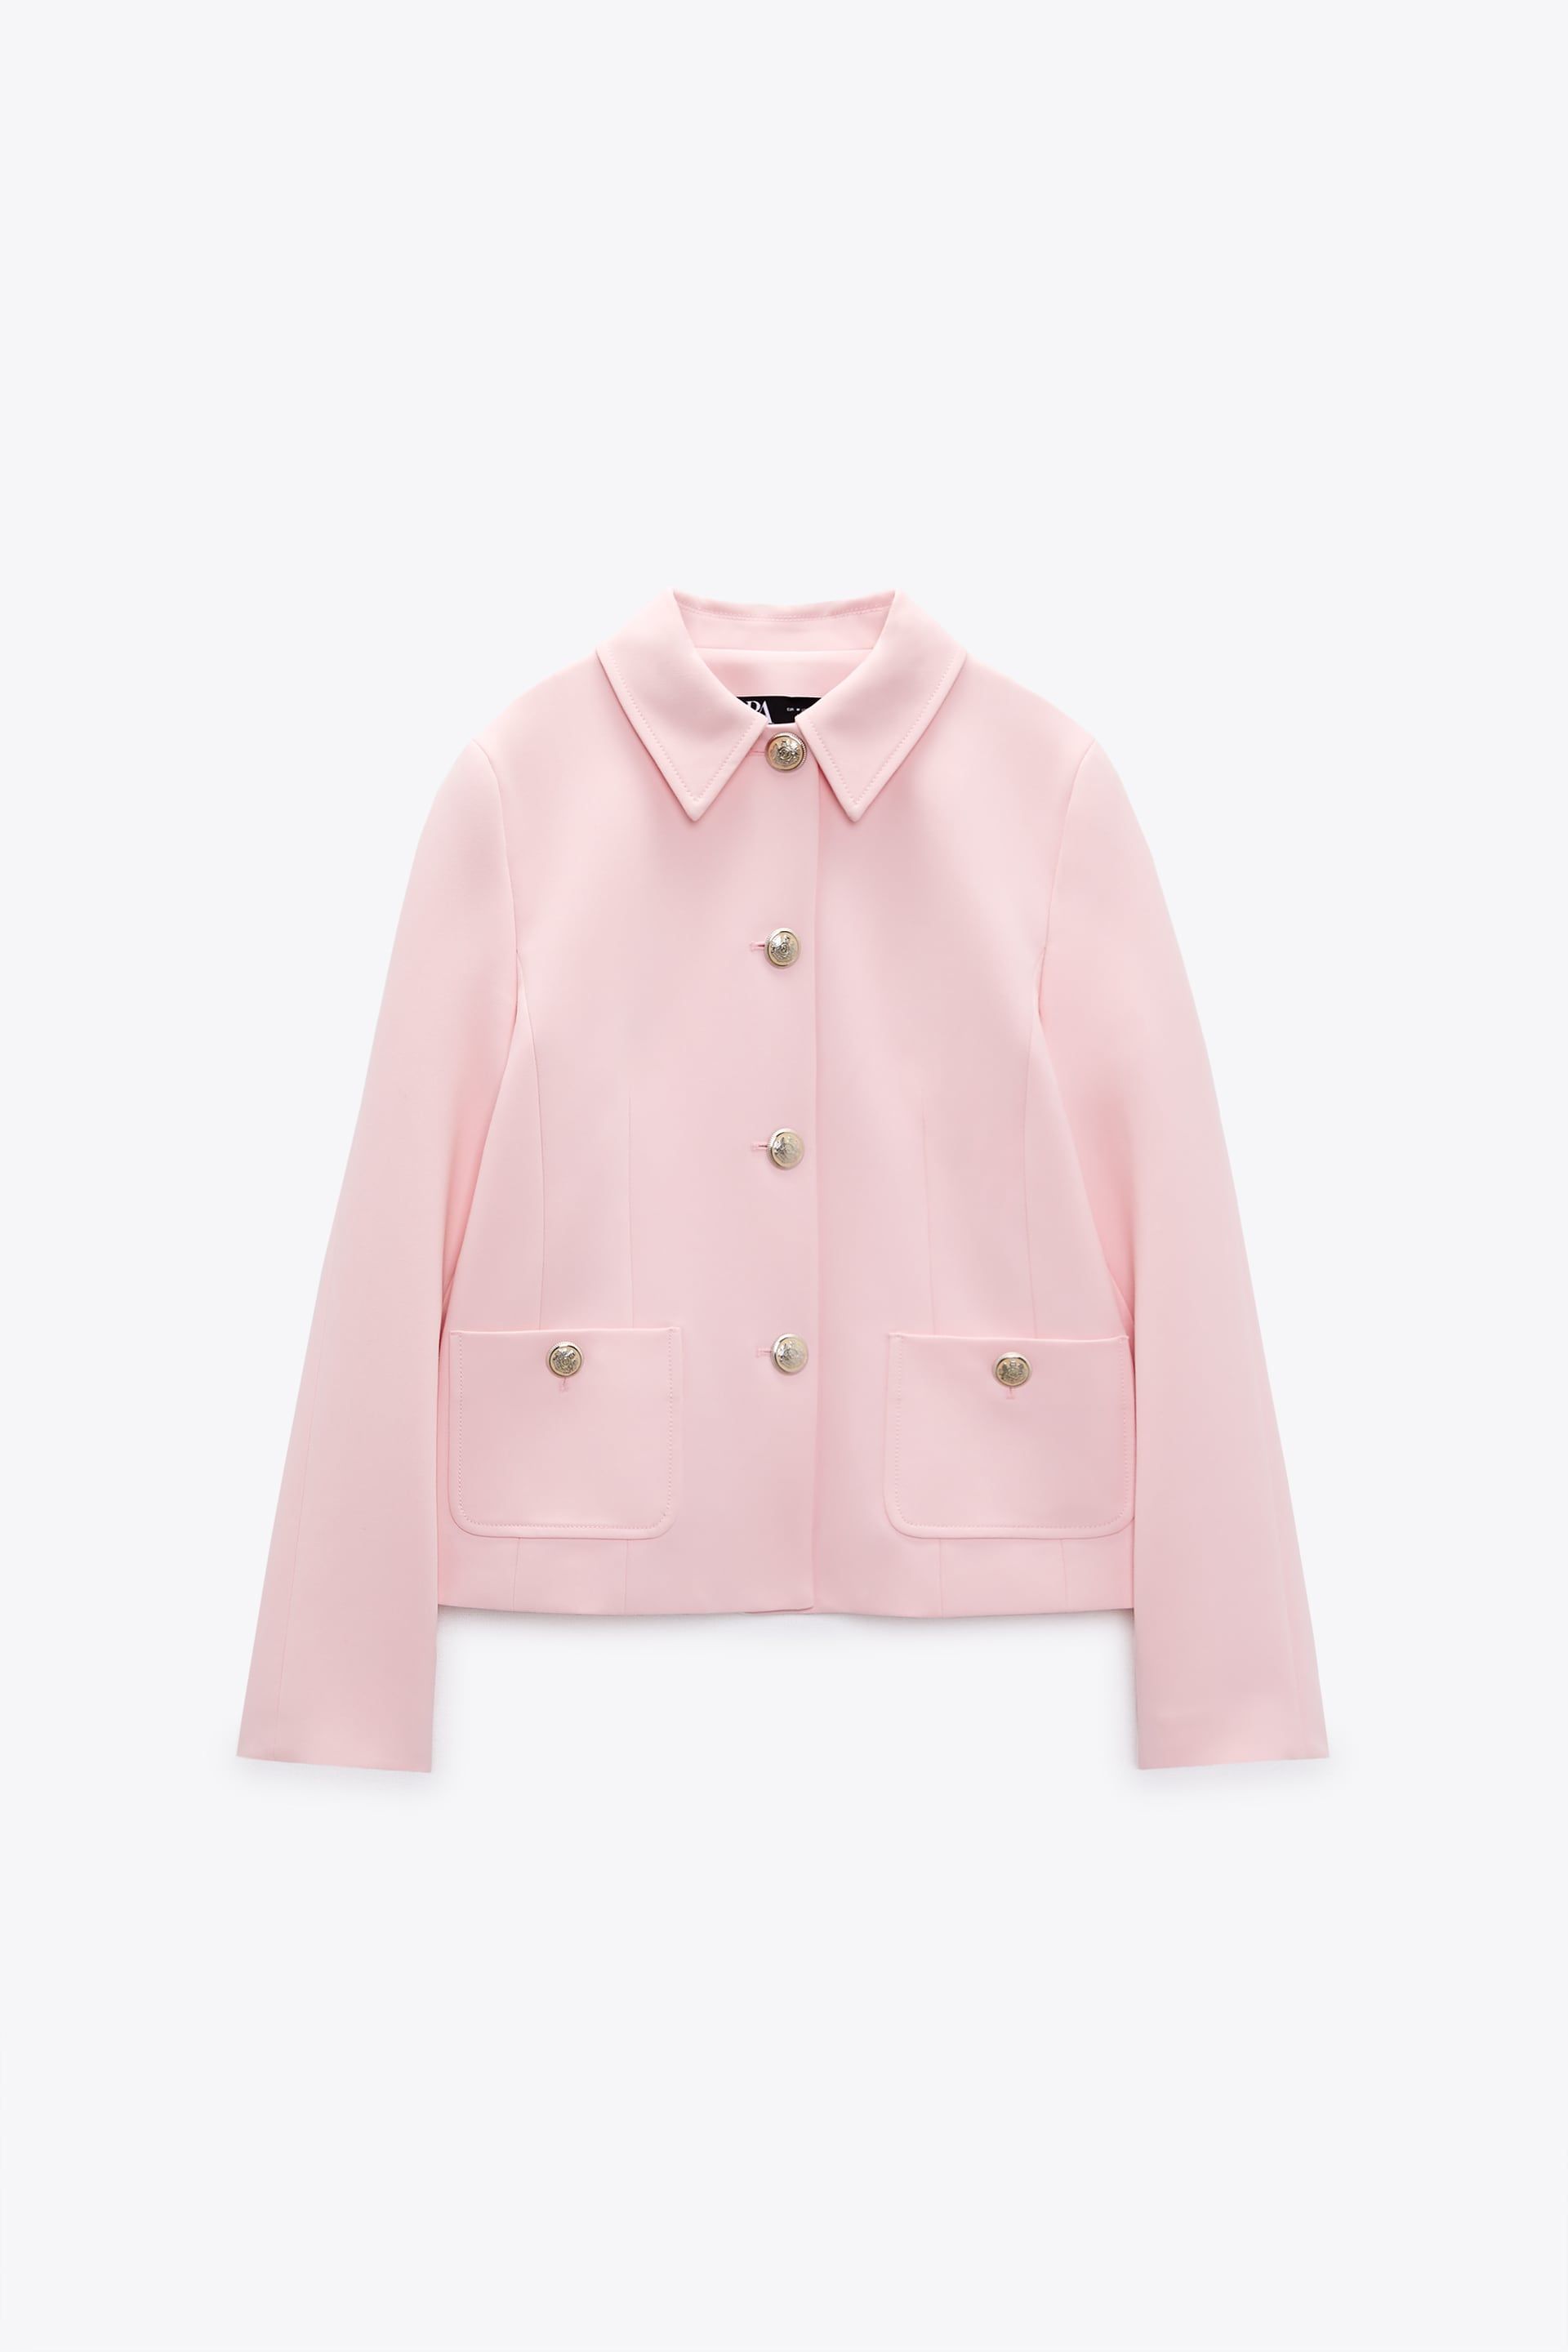 Zara recupera la chaqueta rosa más bonita que vistió Di